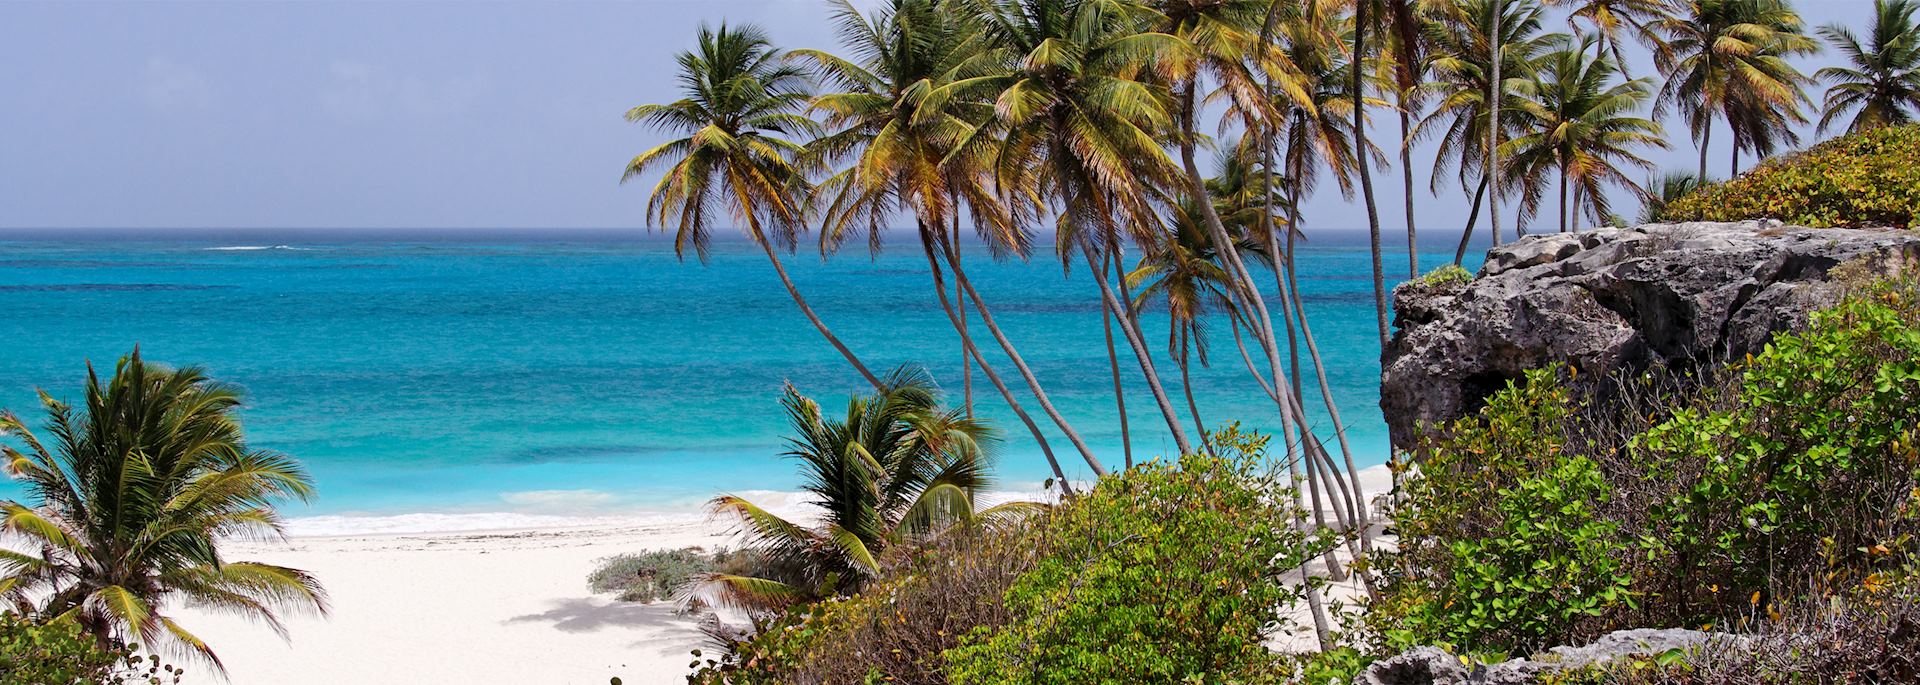 Barbados coastline